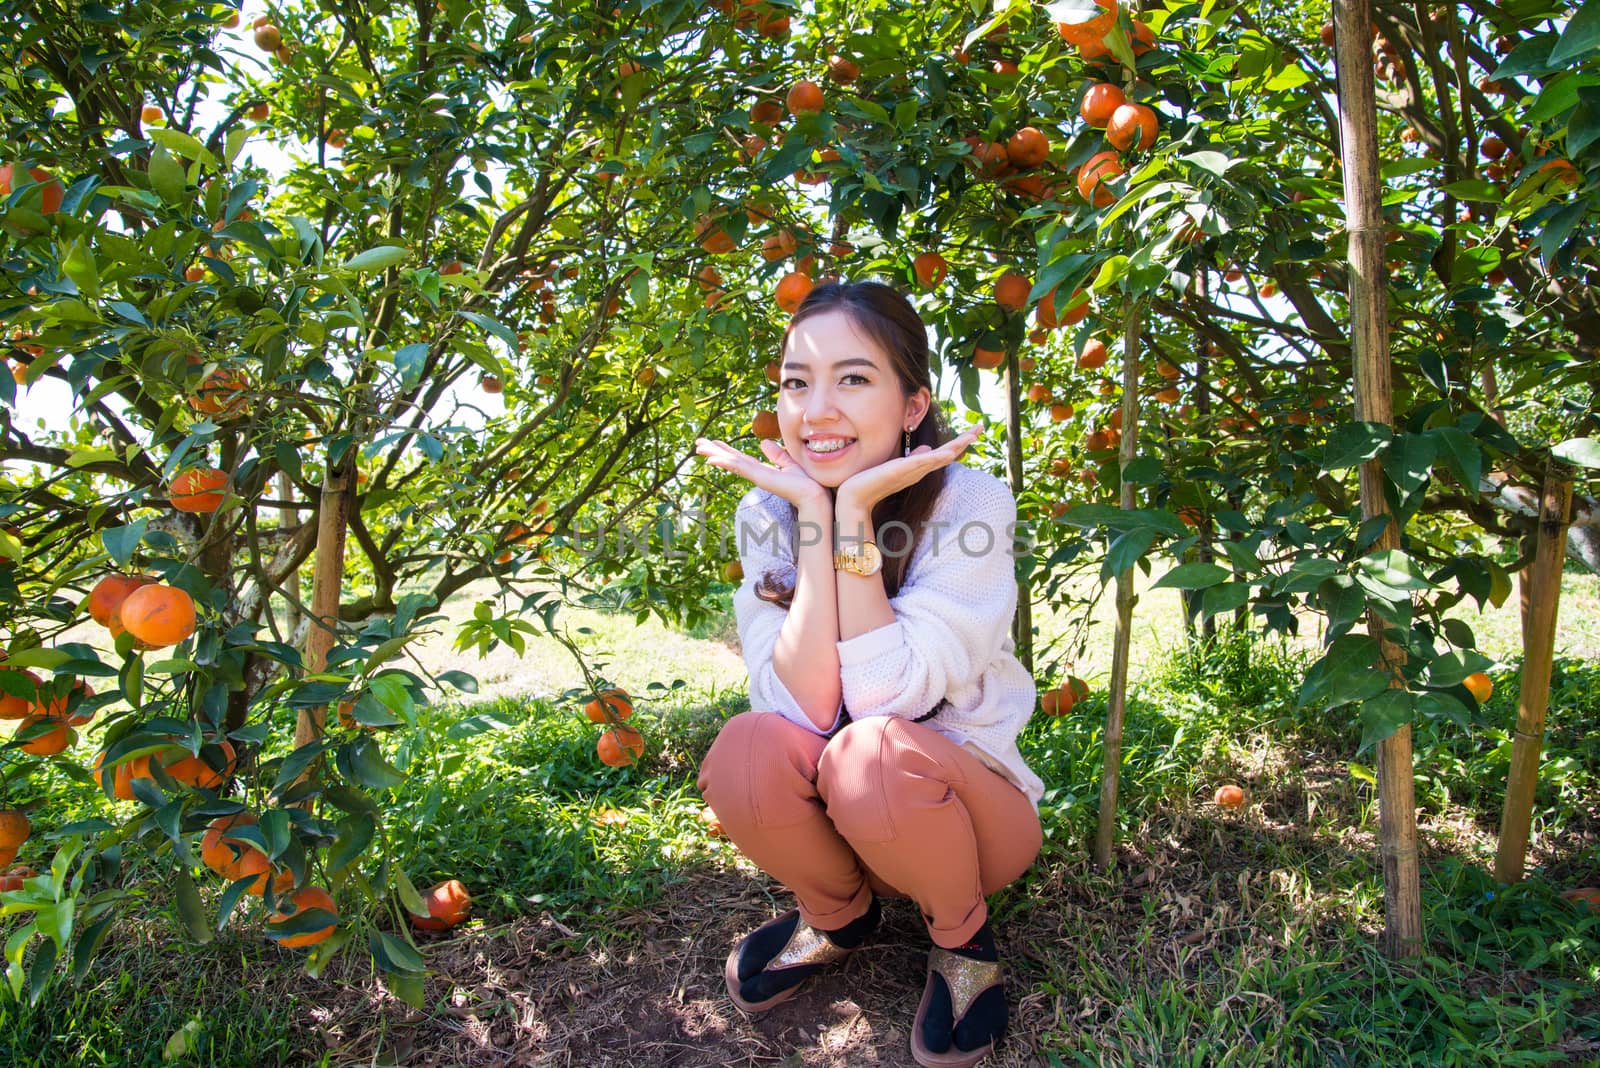 Pretty Asia woman in orange grove smiling